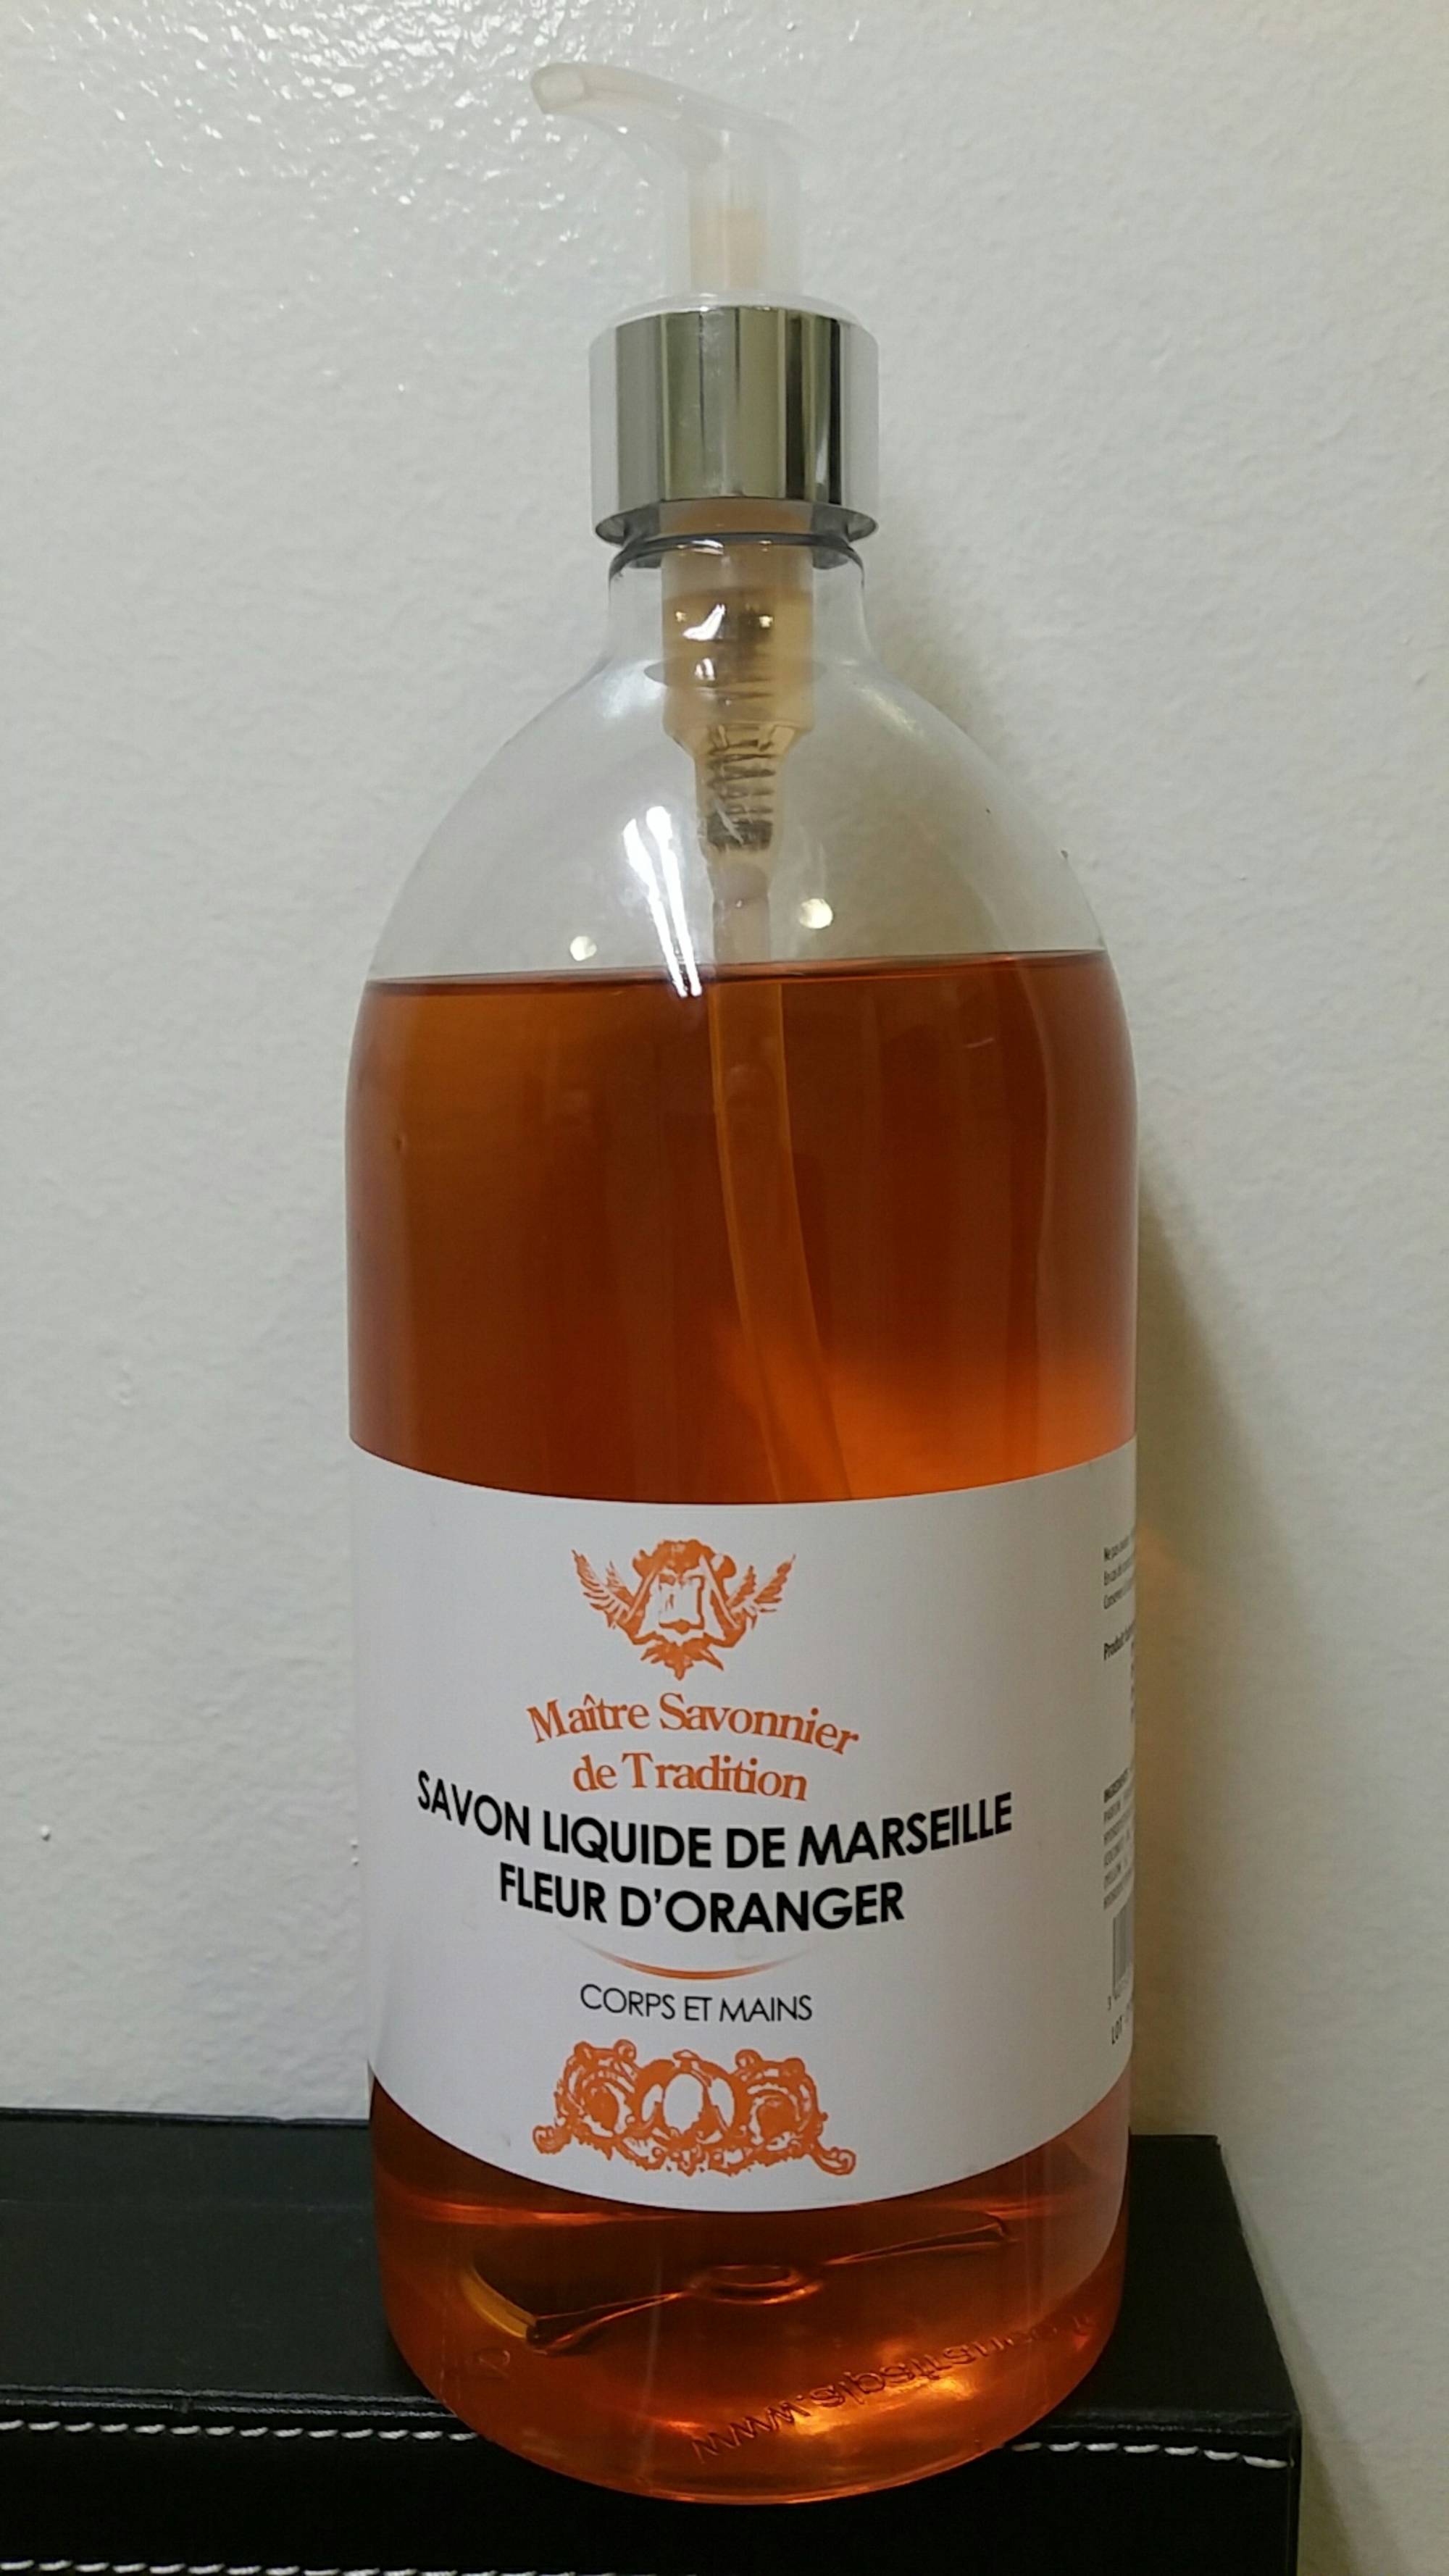 FREESENS - Savon liquide de Marseille fleur d'oranger - Corps et mains